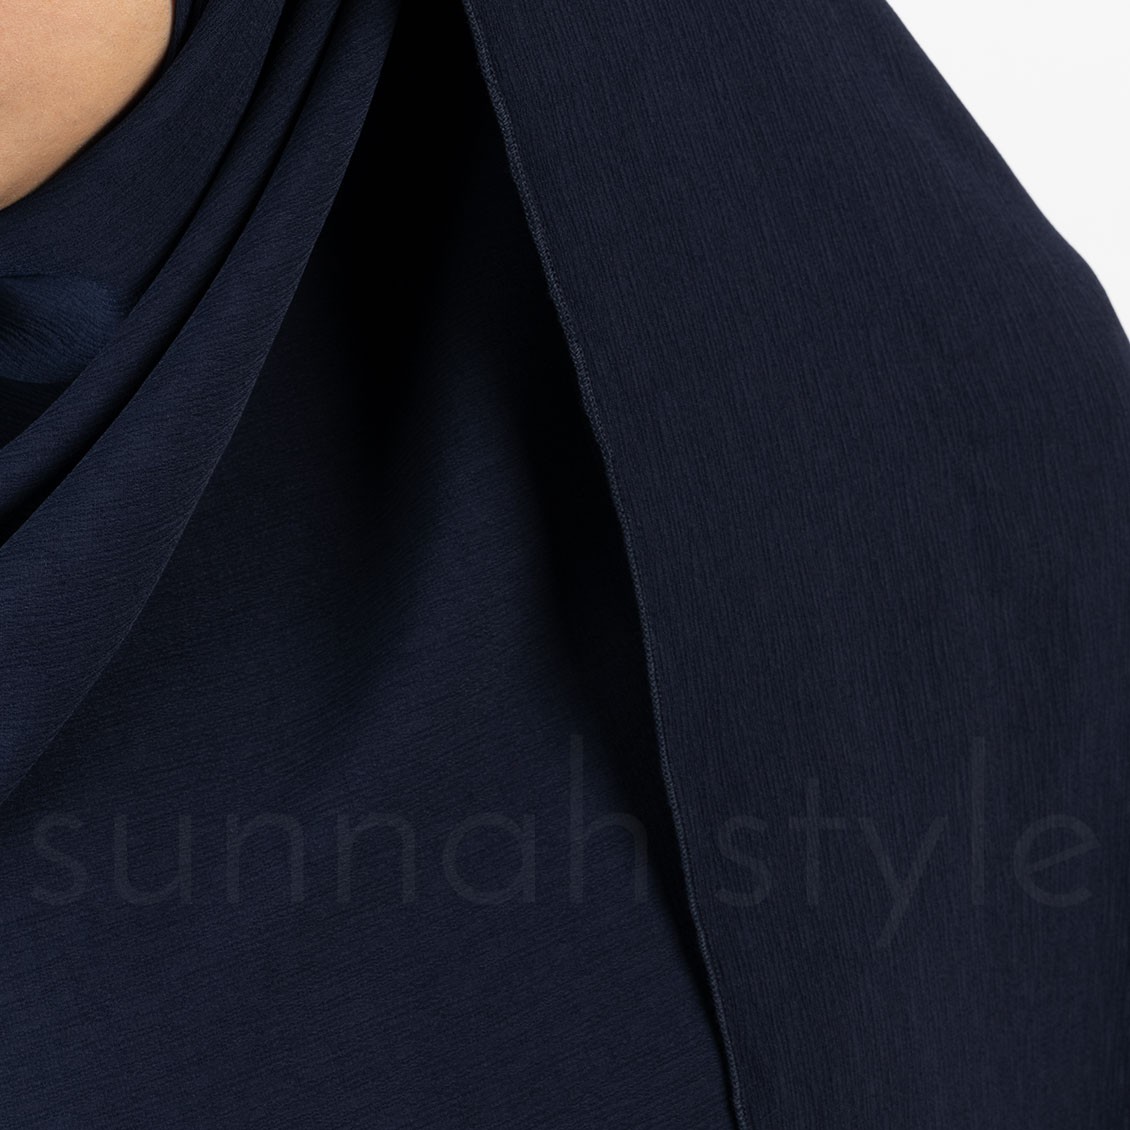 Sunnah Style Brushed Shayla XL Navy Blue